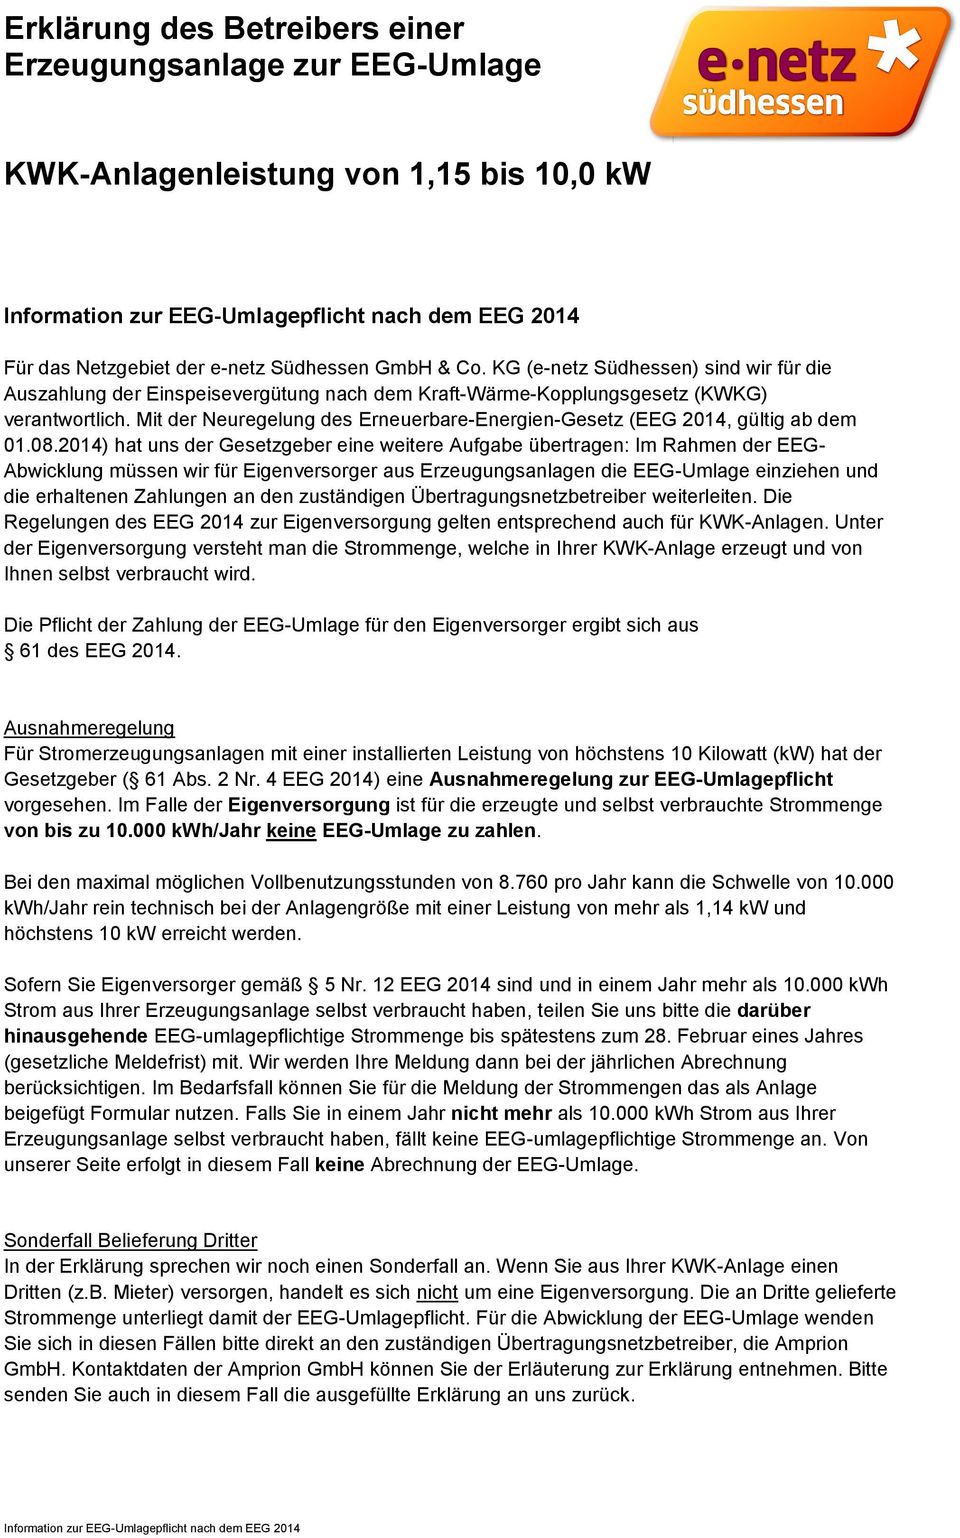 Mit der Neuregelung des Erneuerbare-Energien-Gesetz (EEG 2014, gültig ab dem 01.08.